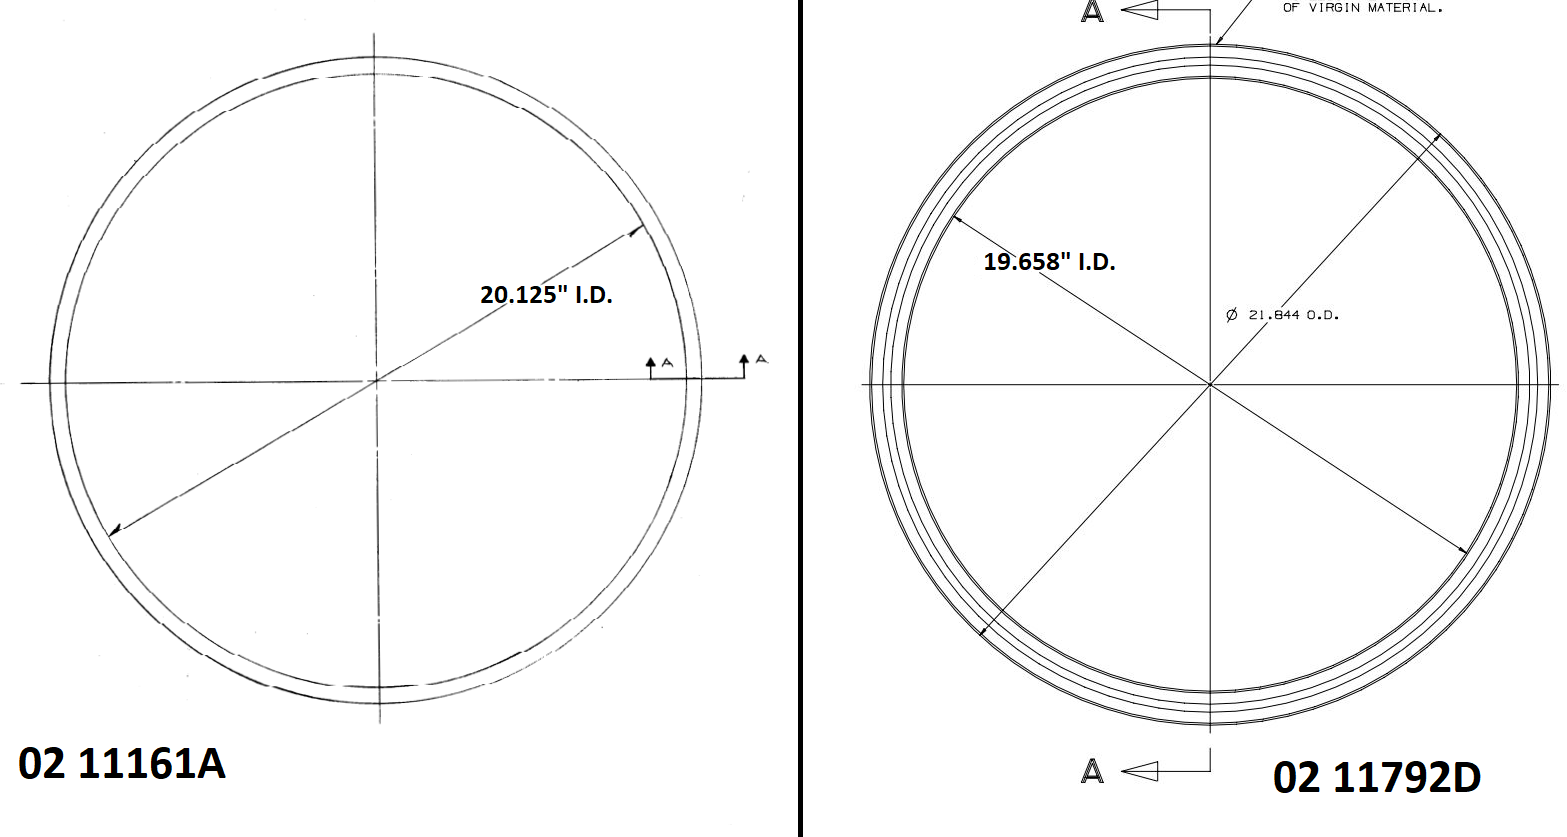 02 11792D vs 02 1161A Inner Diameter